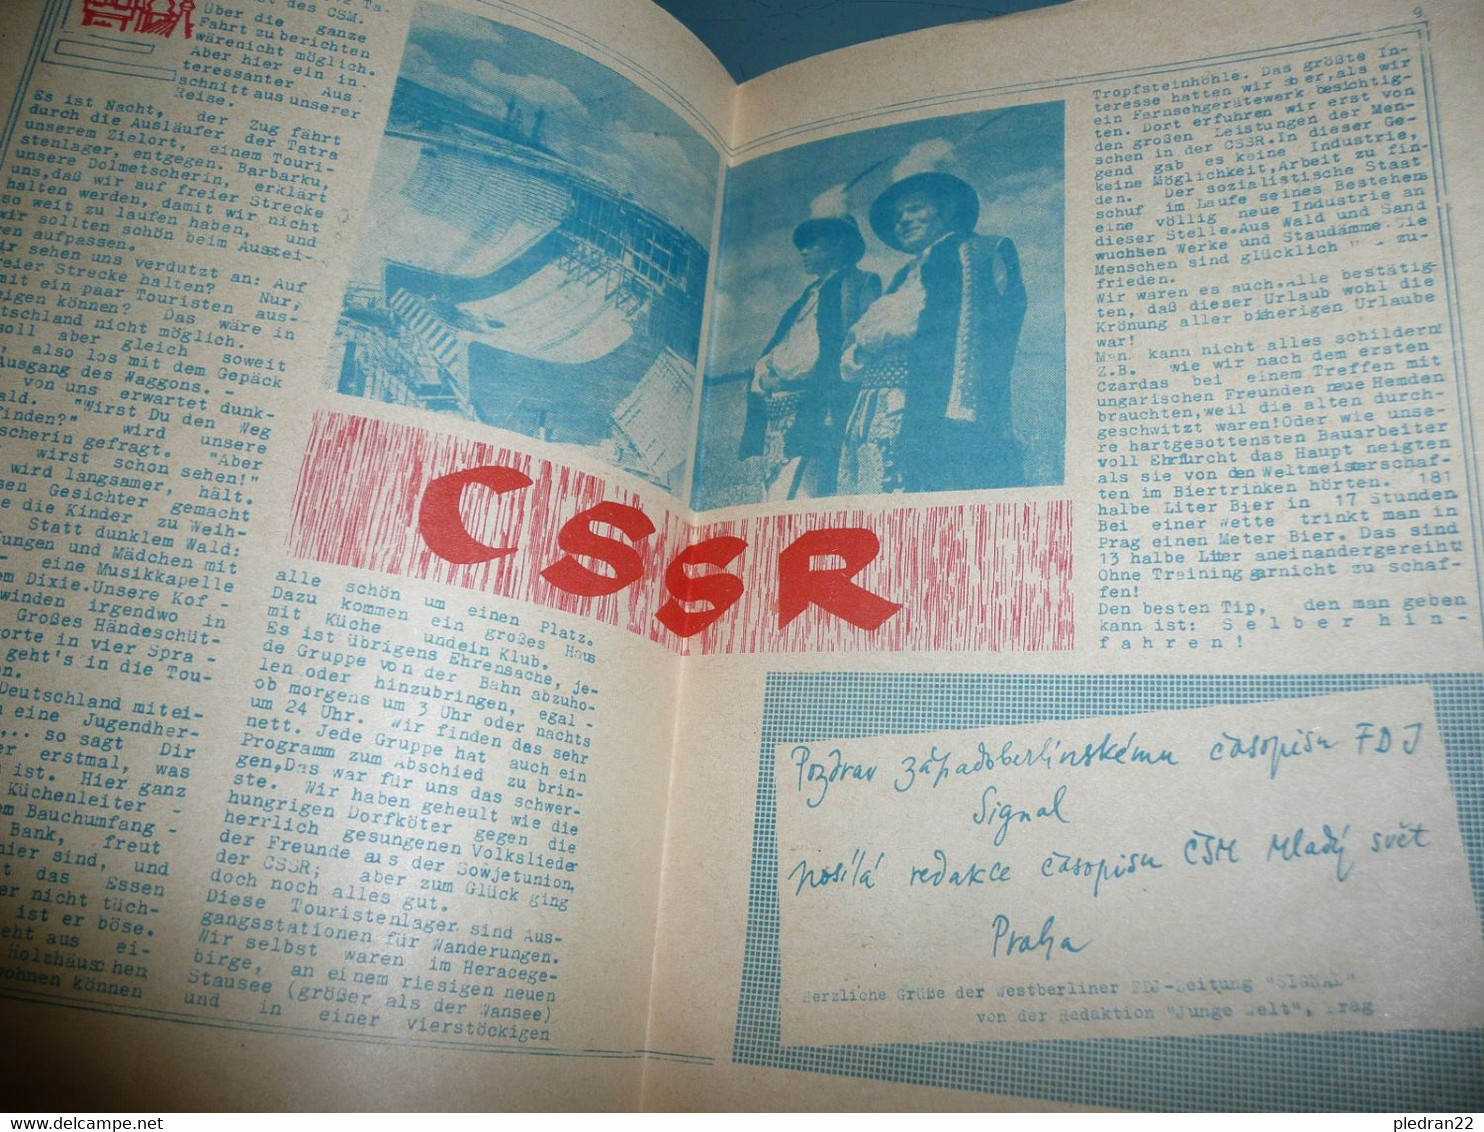 REVUE SIGNAL 1. SEPT. ANTIKRIEGSTAG 1963 ALLEMAGNE DE L'EST BERLIN 65 NEUE HOCHSTR. 10 HAUSDRUCK - Politik & Zeitgeschichte